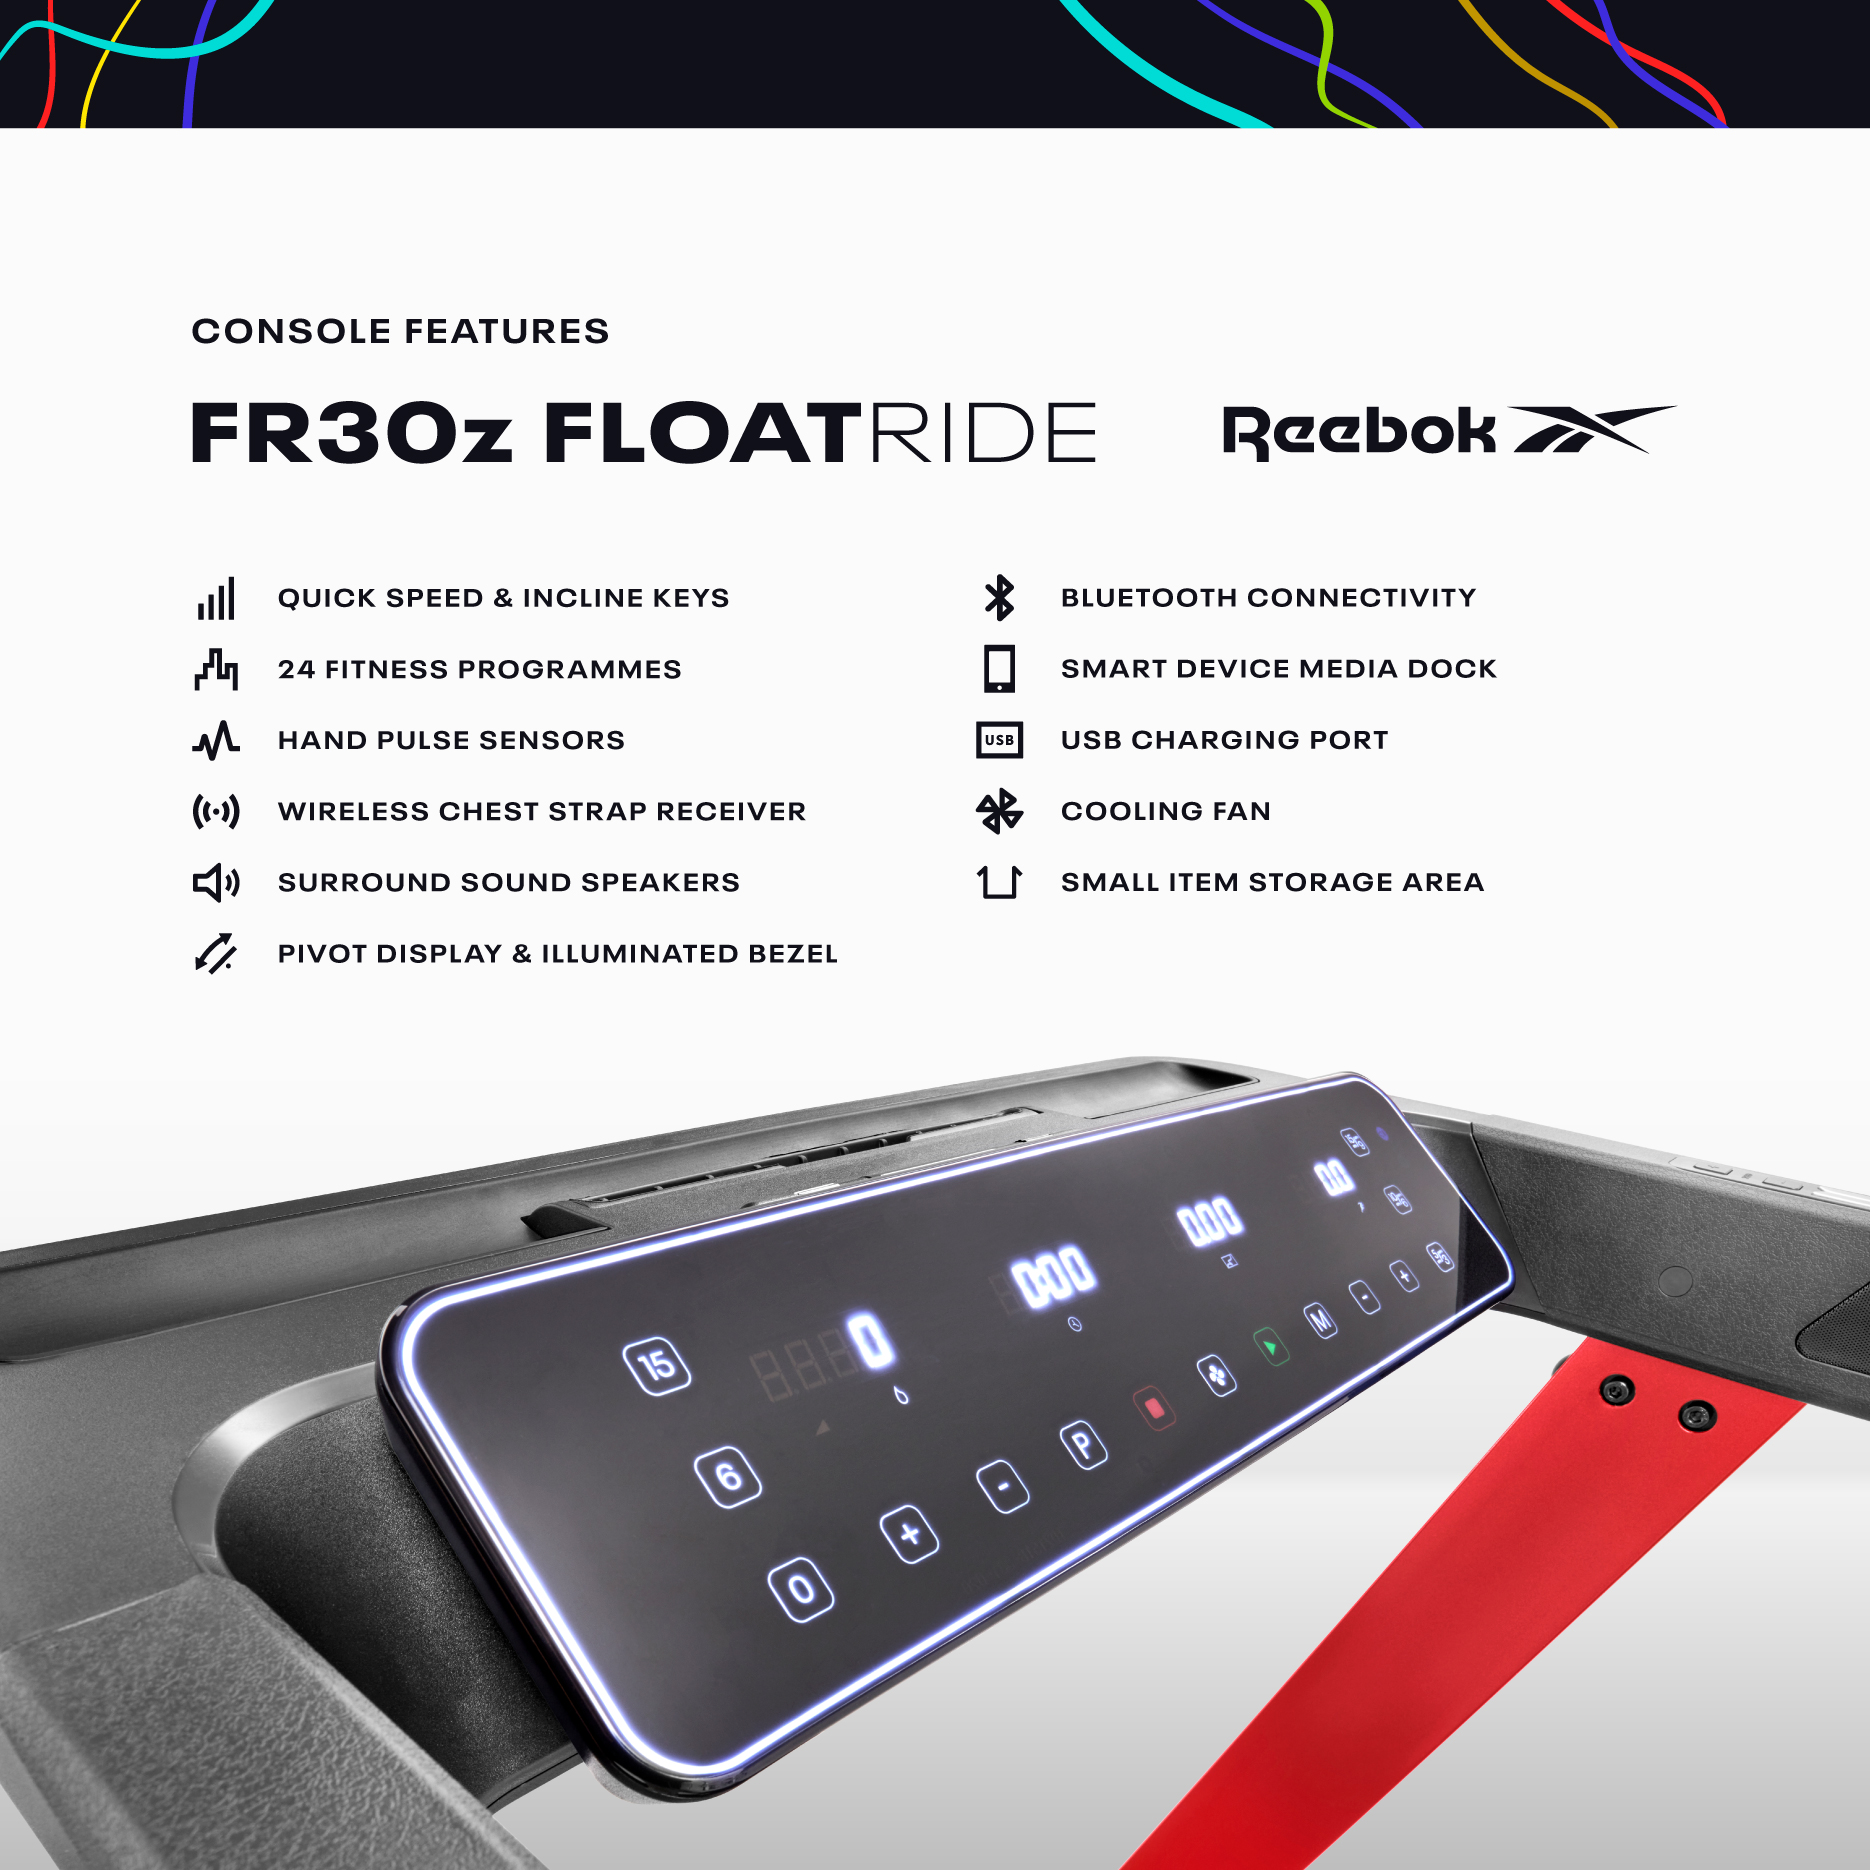 Reebok RVFR-10421RD FR30z Floatride Treadmill (Red)